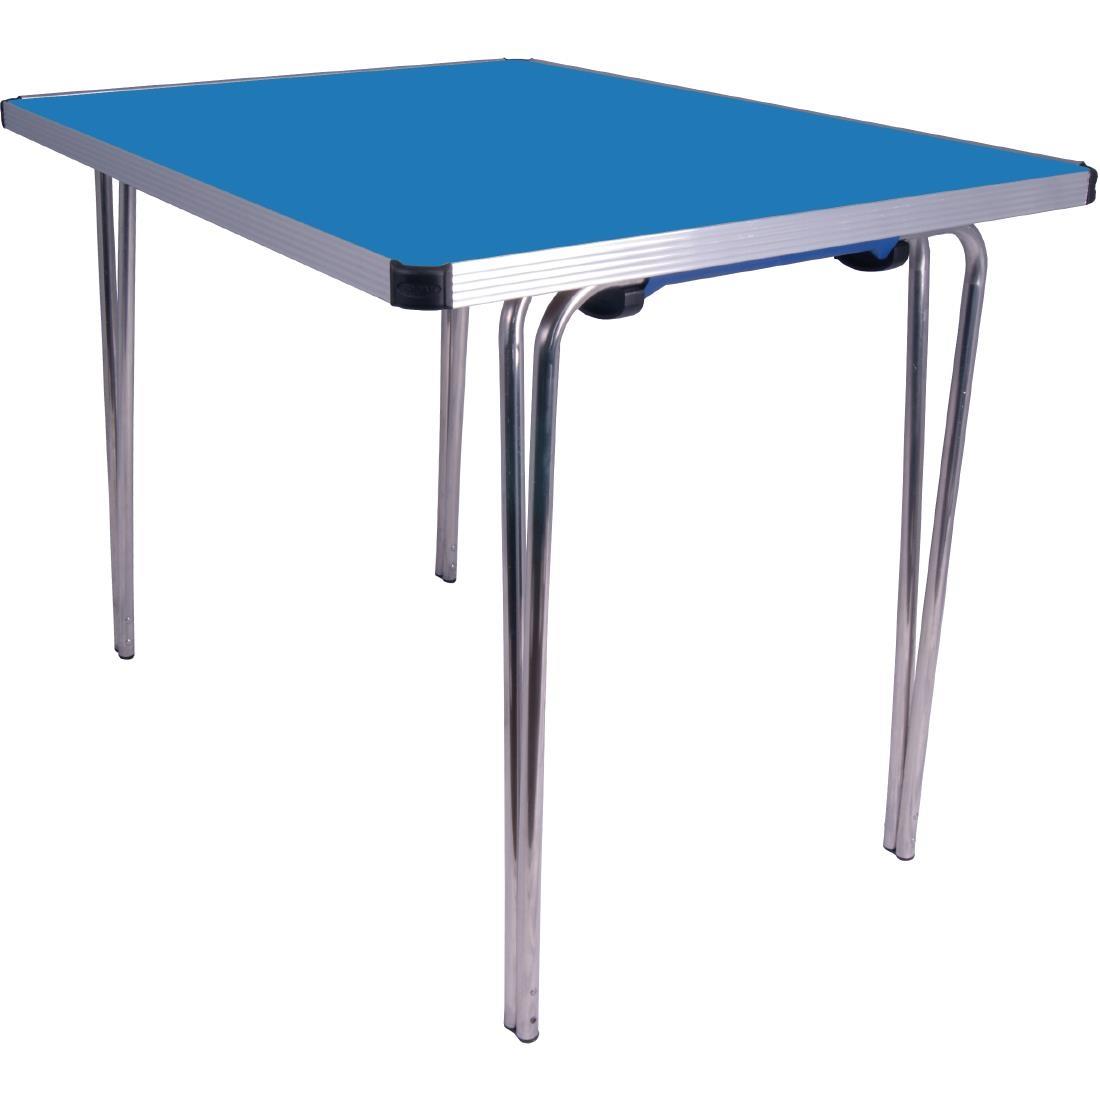 Gopak Contour Folding Table Blue 3ft - DM608  - 1